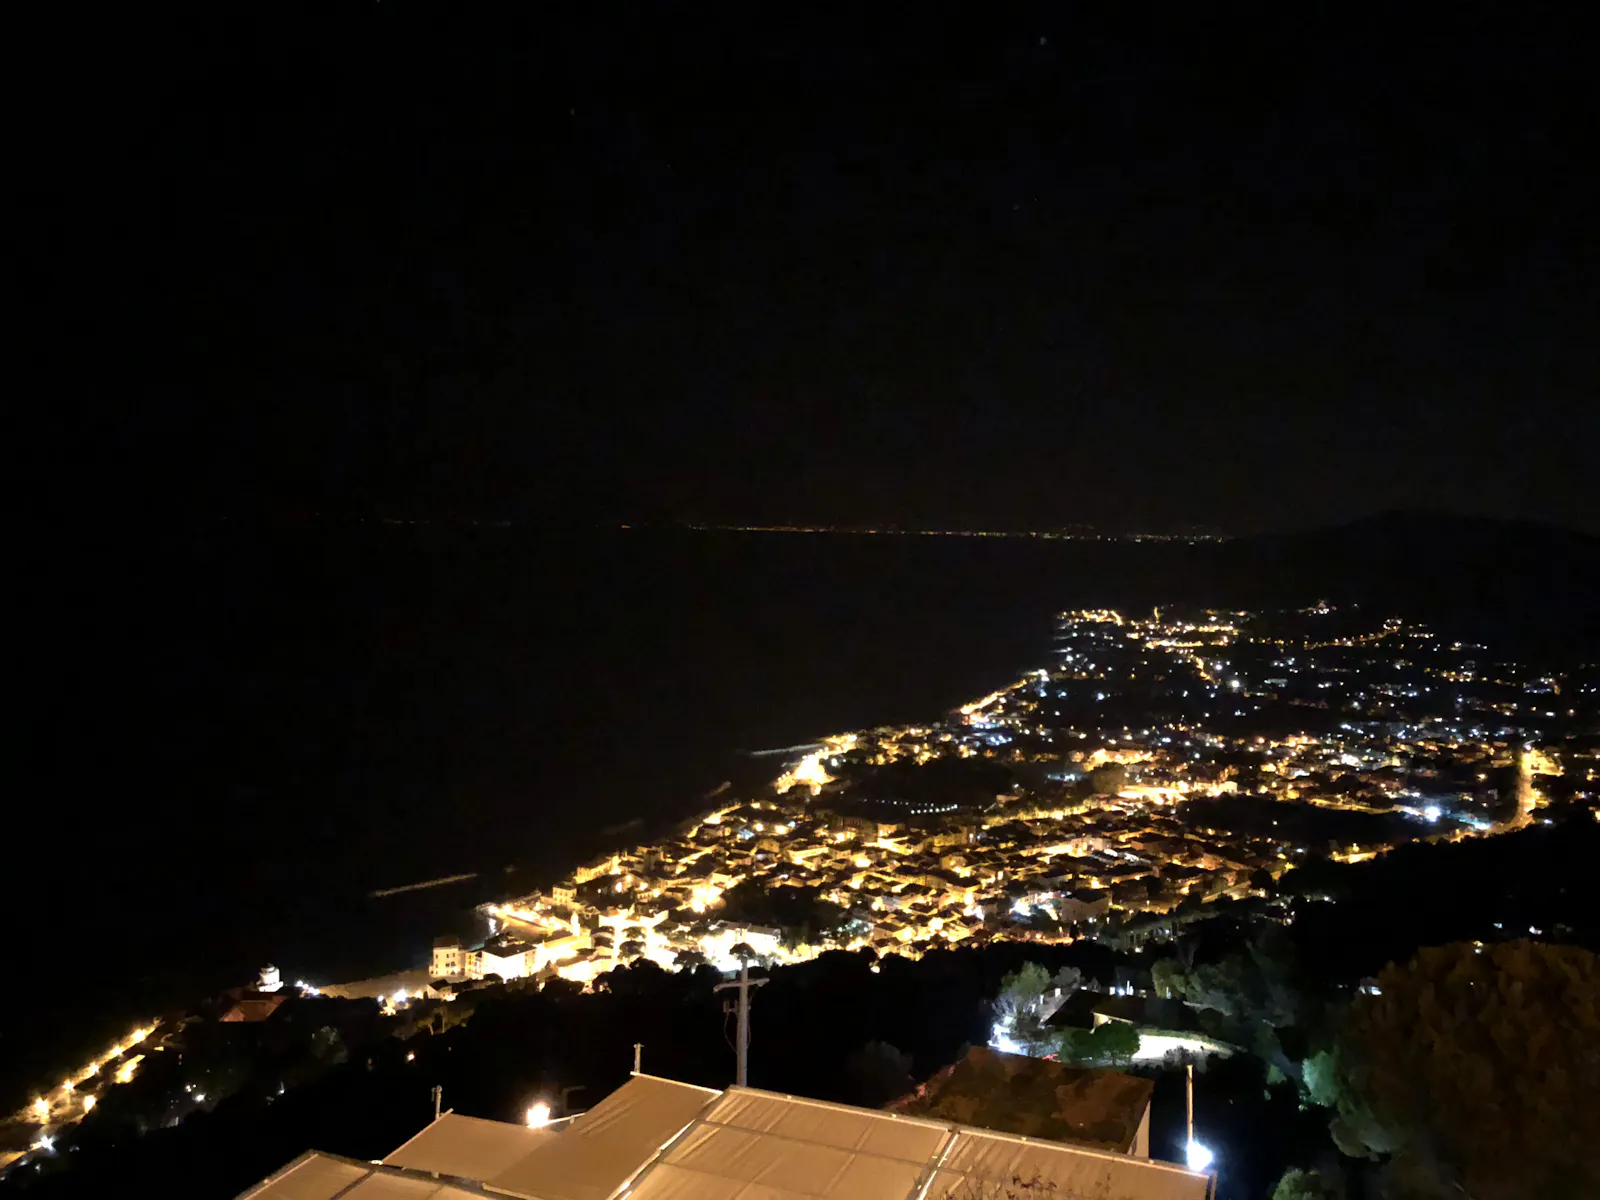 Nächtlicher Blick von einem Hügle auf einen beleuchteten Ort, links davon das nachtschwarze Meer